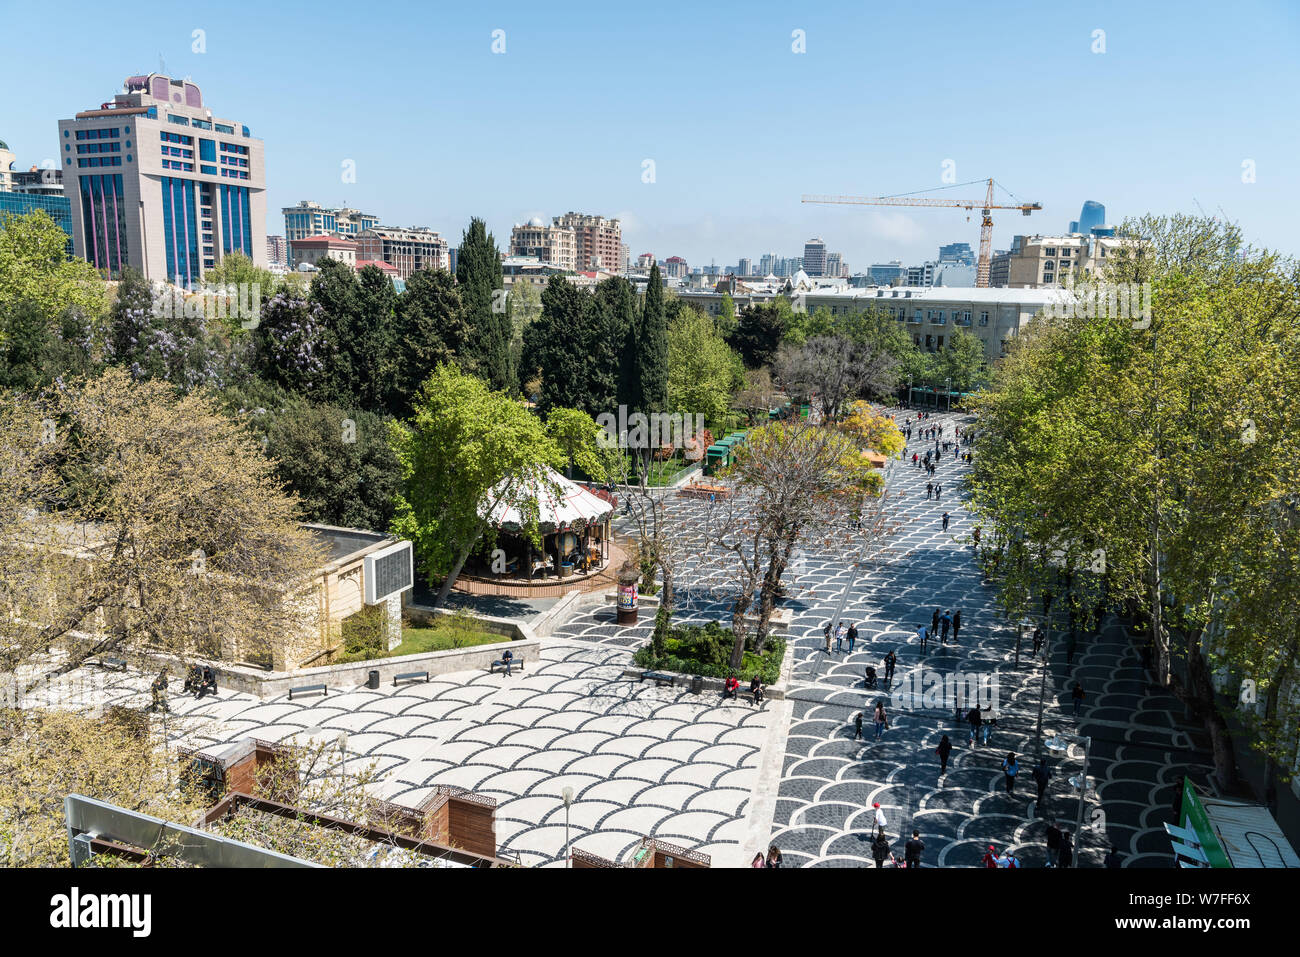 Baku, Aserbaidschan, 27. April 2019. Brunnen Quadrat in Baku, mit Gebäuden, Vegetation und Menschen. Stockfoto